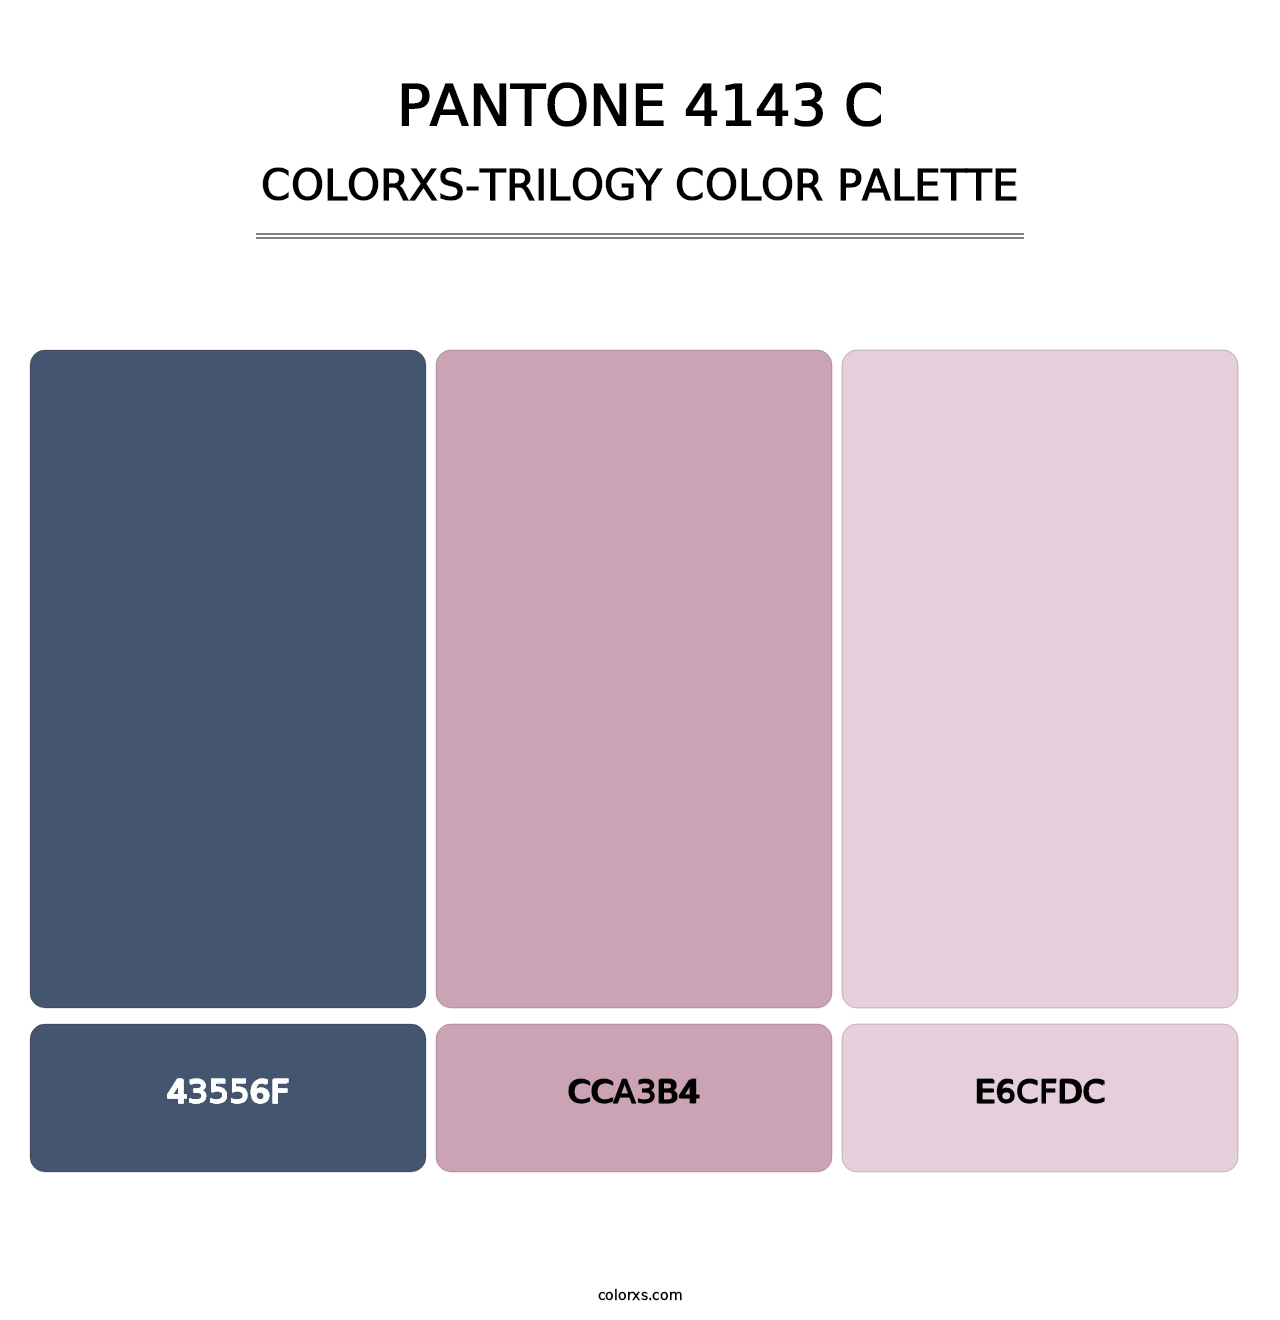 PANTONE 4143 C - Colorxs Trilogy Palette